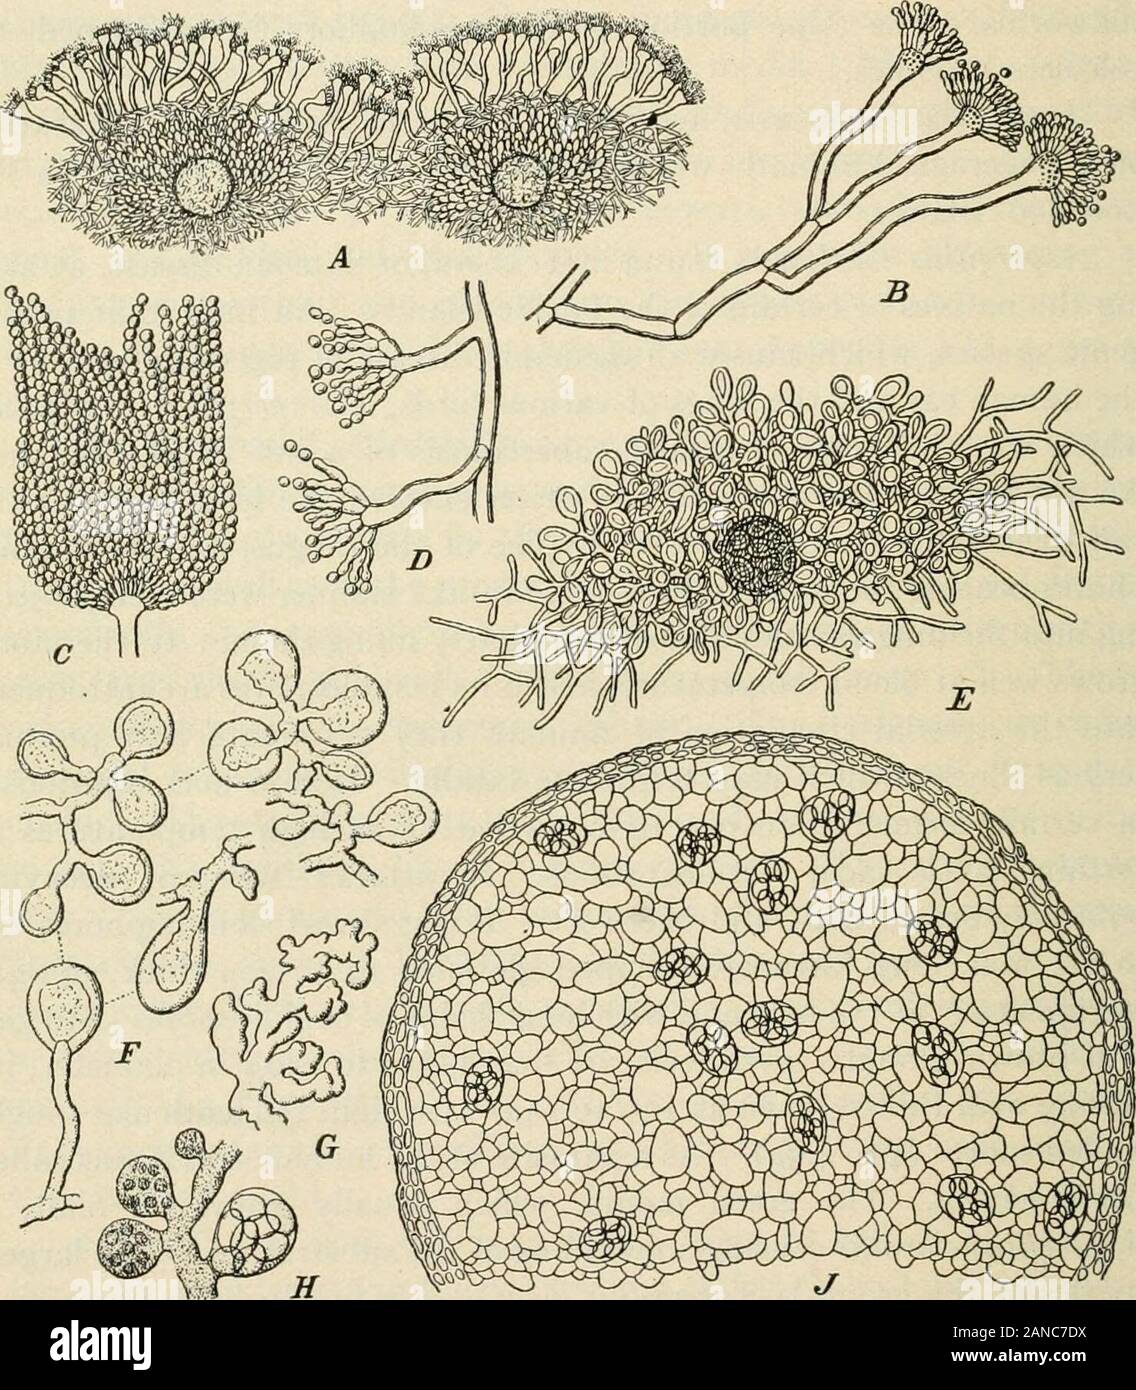 Un texte-livre de mycologie et pathologie végétale . mètre, en clôture mince peau ovale (9 à l'asci i4ju) avec huit spores à paroi dure lenticulaire (4 à 4,5)^- comme un parasite de la peau humaine c'était calledLepidophyton. La moule verte, qui se développe habituellement sur le malt, isAspergillus clavatus provoquant un moulage du substrat. Le largestspecies du groupe est l'Aspergillus giganteus, qui ressemble au premier super-ficially comme un Mucor, mais plus tard en raison de sa couleur gris-vert conidiosporesit est facilement séparable du Mucor la végétation. Son stérigmates seemto être creuse, la communication avec un pore-comme ope Banque D'Images